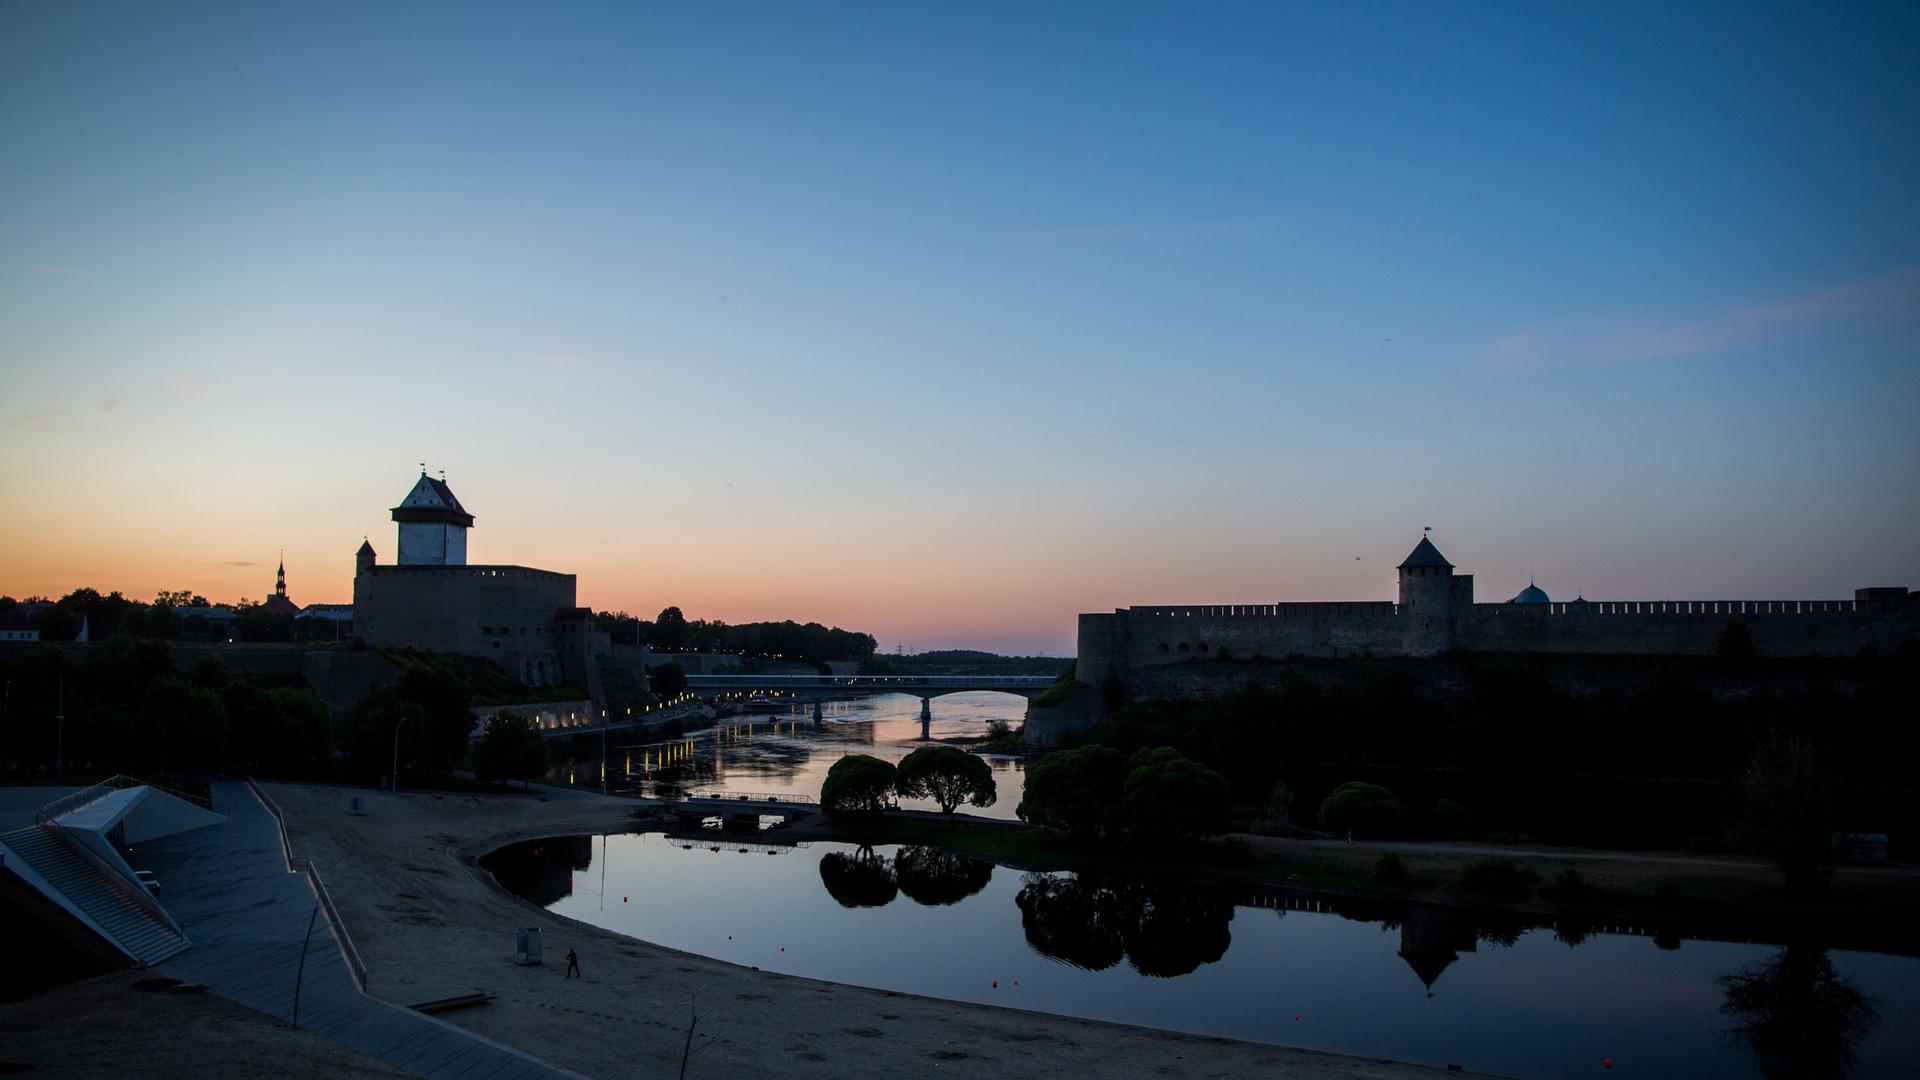 Die Sonne geht hinter der Hermannsfeste in der estnischen Stadt Narva und der russischen Burg Iwangorod auf der gegenüberliegenden Seite unter. Dazwischen fließt der Fluss Narva.